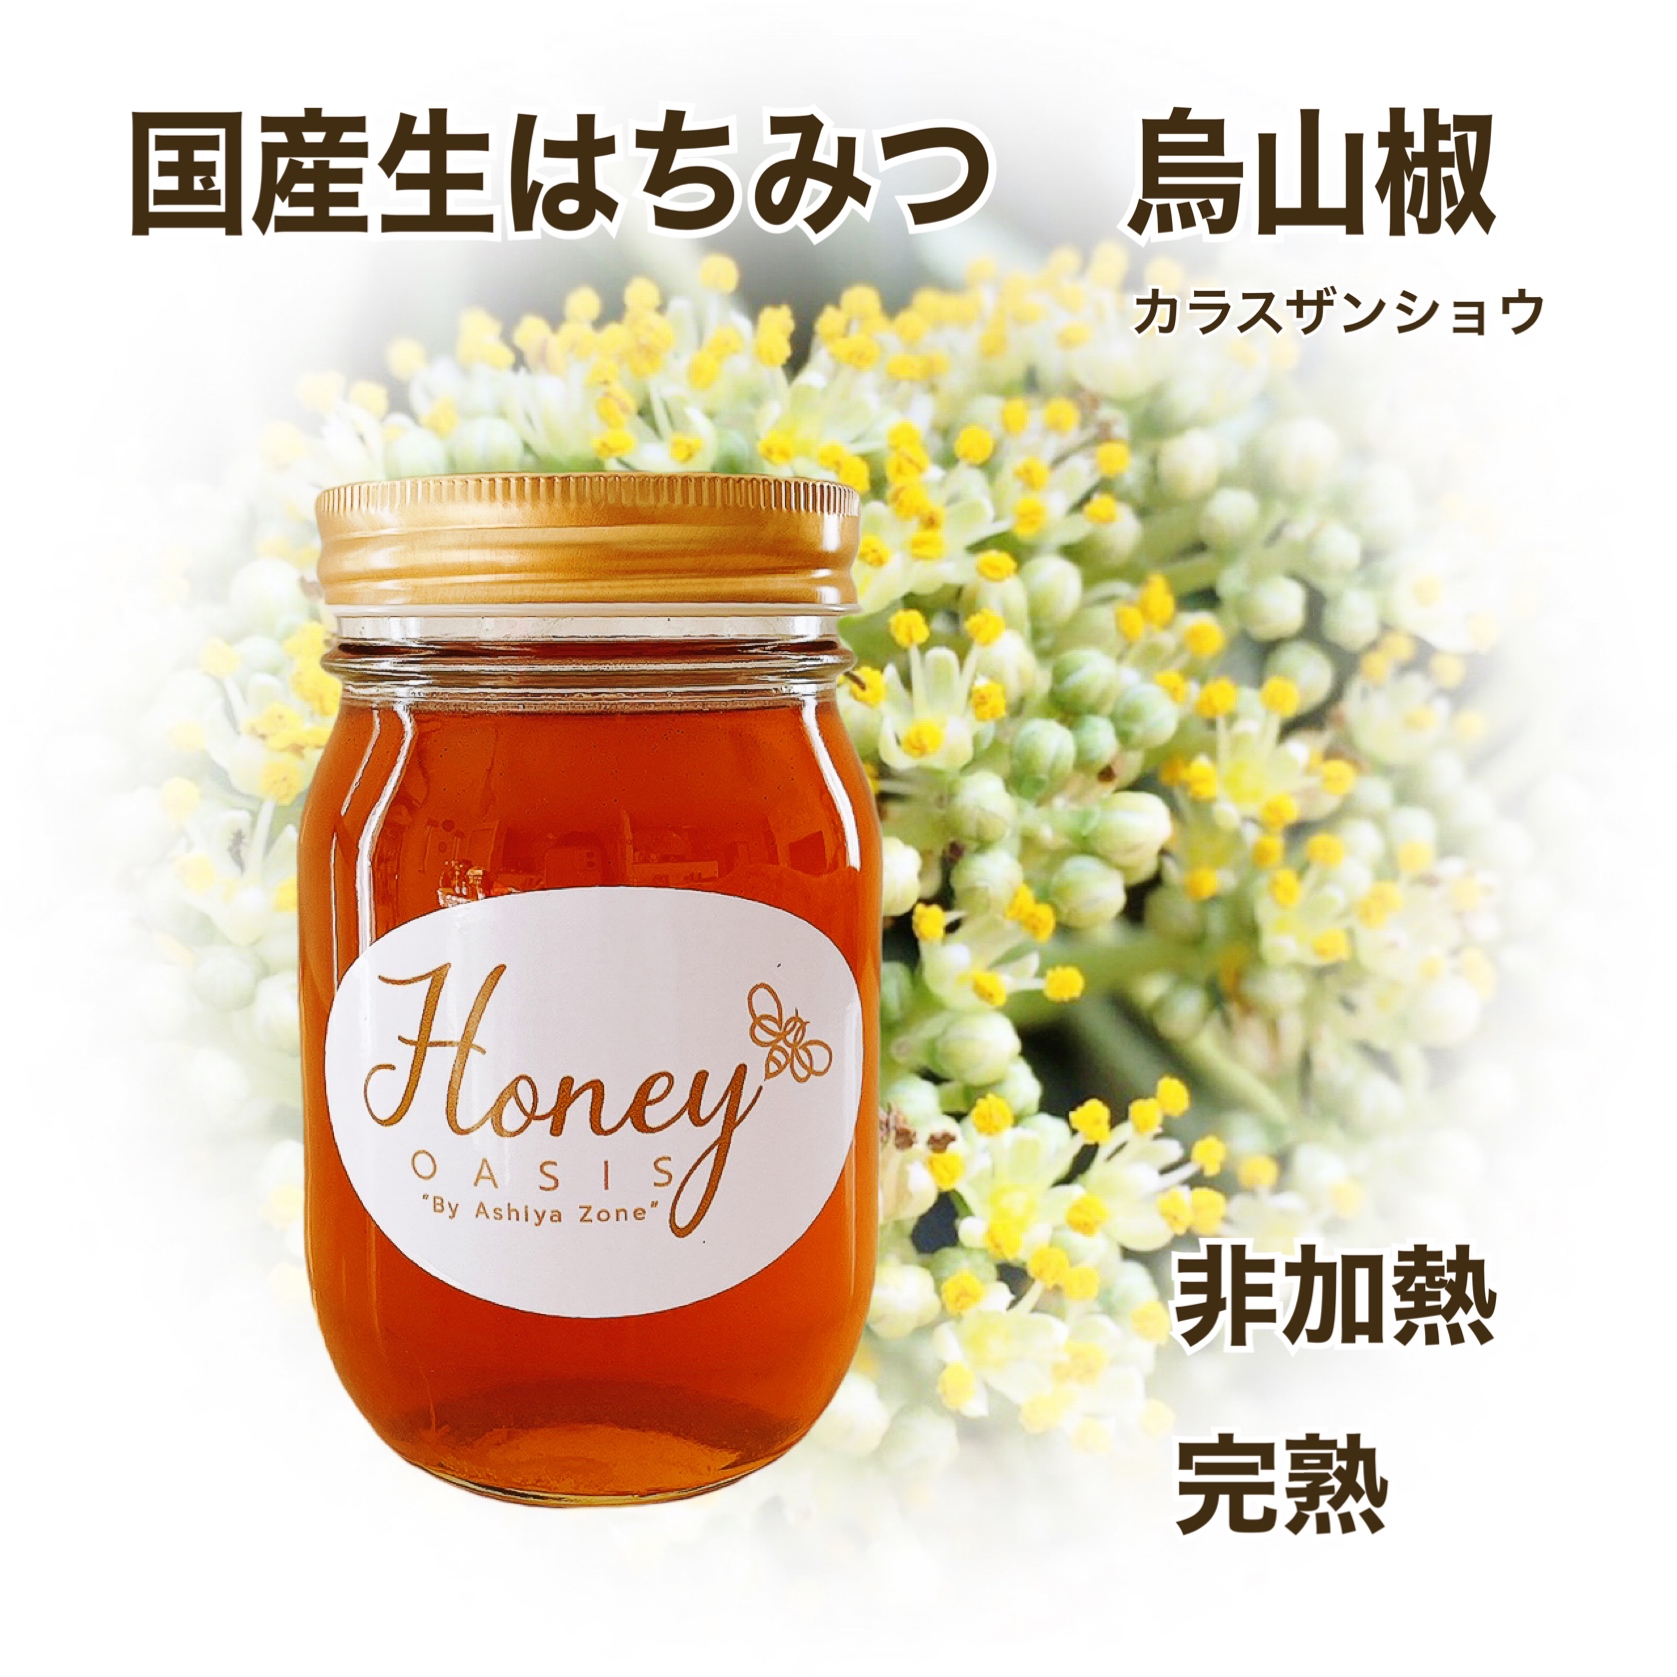 公式ストア 新蜜 生はちみつ 5月13日採蜜 天然 150gを3本 非加熱蜂蜜